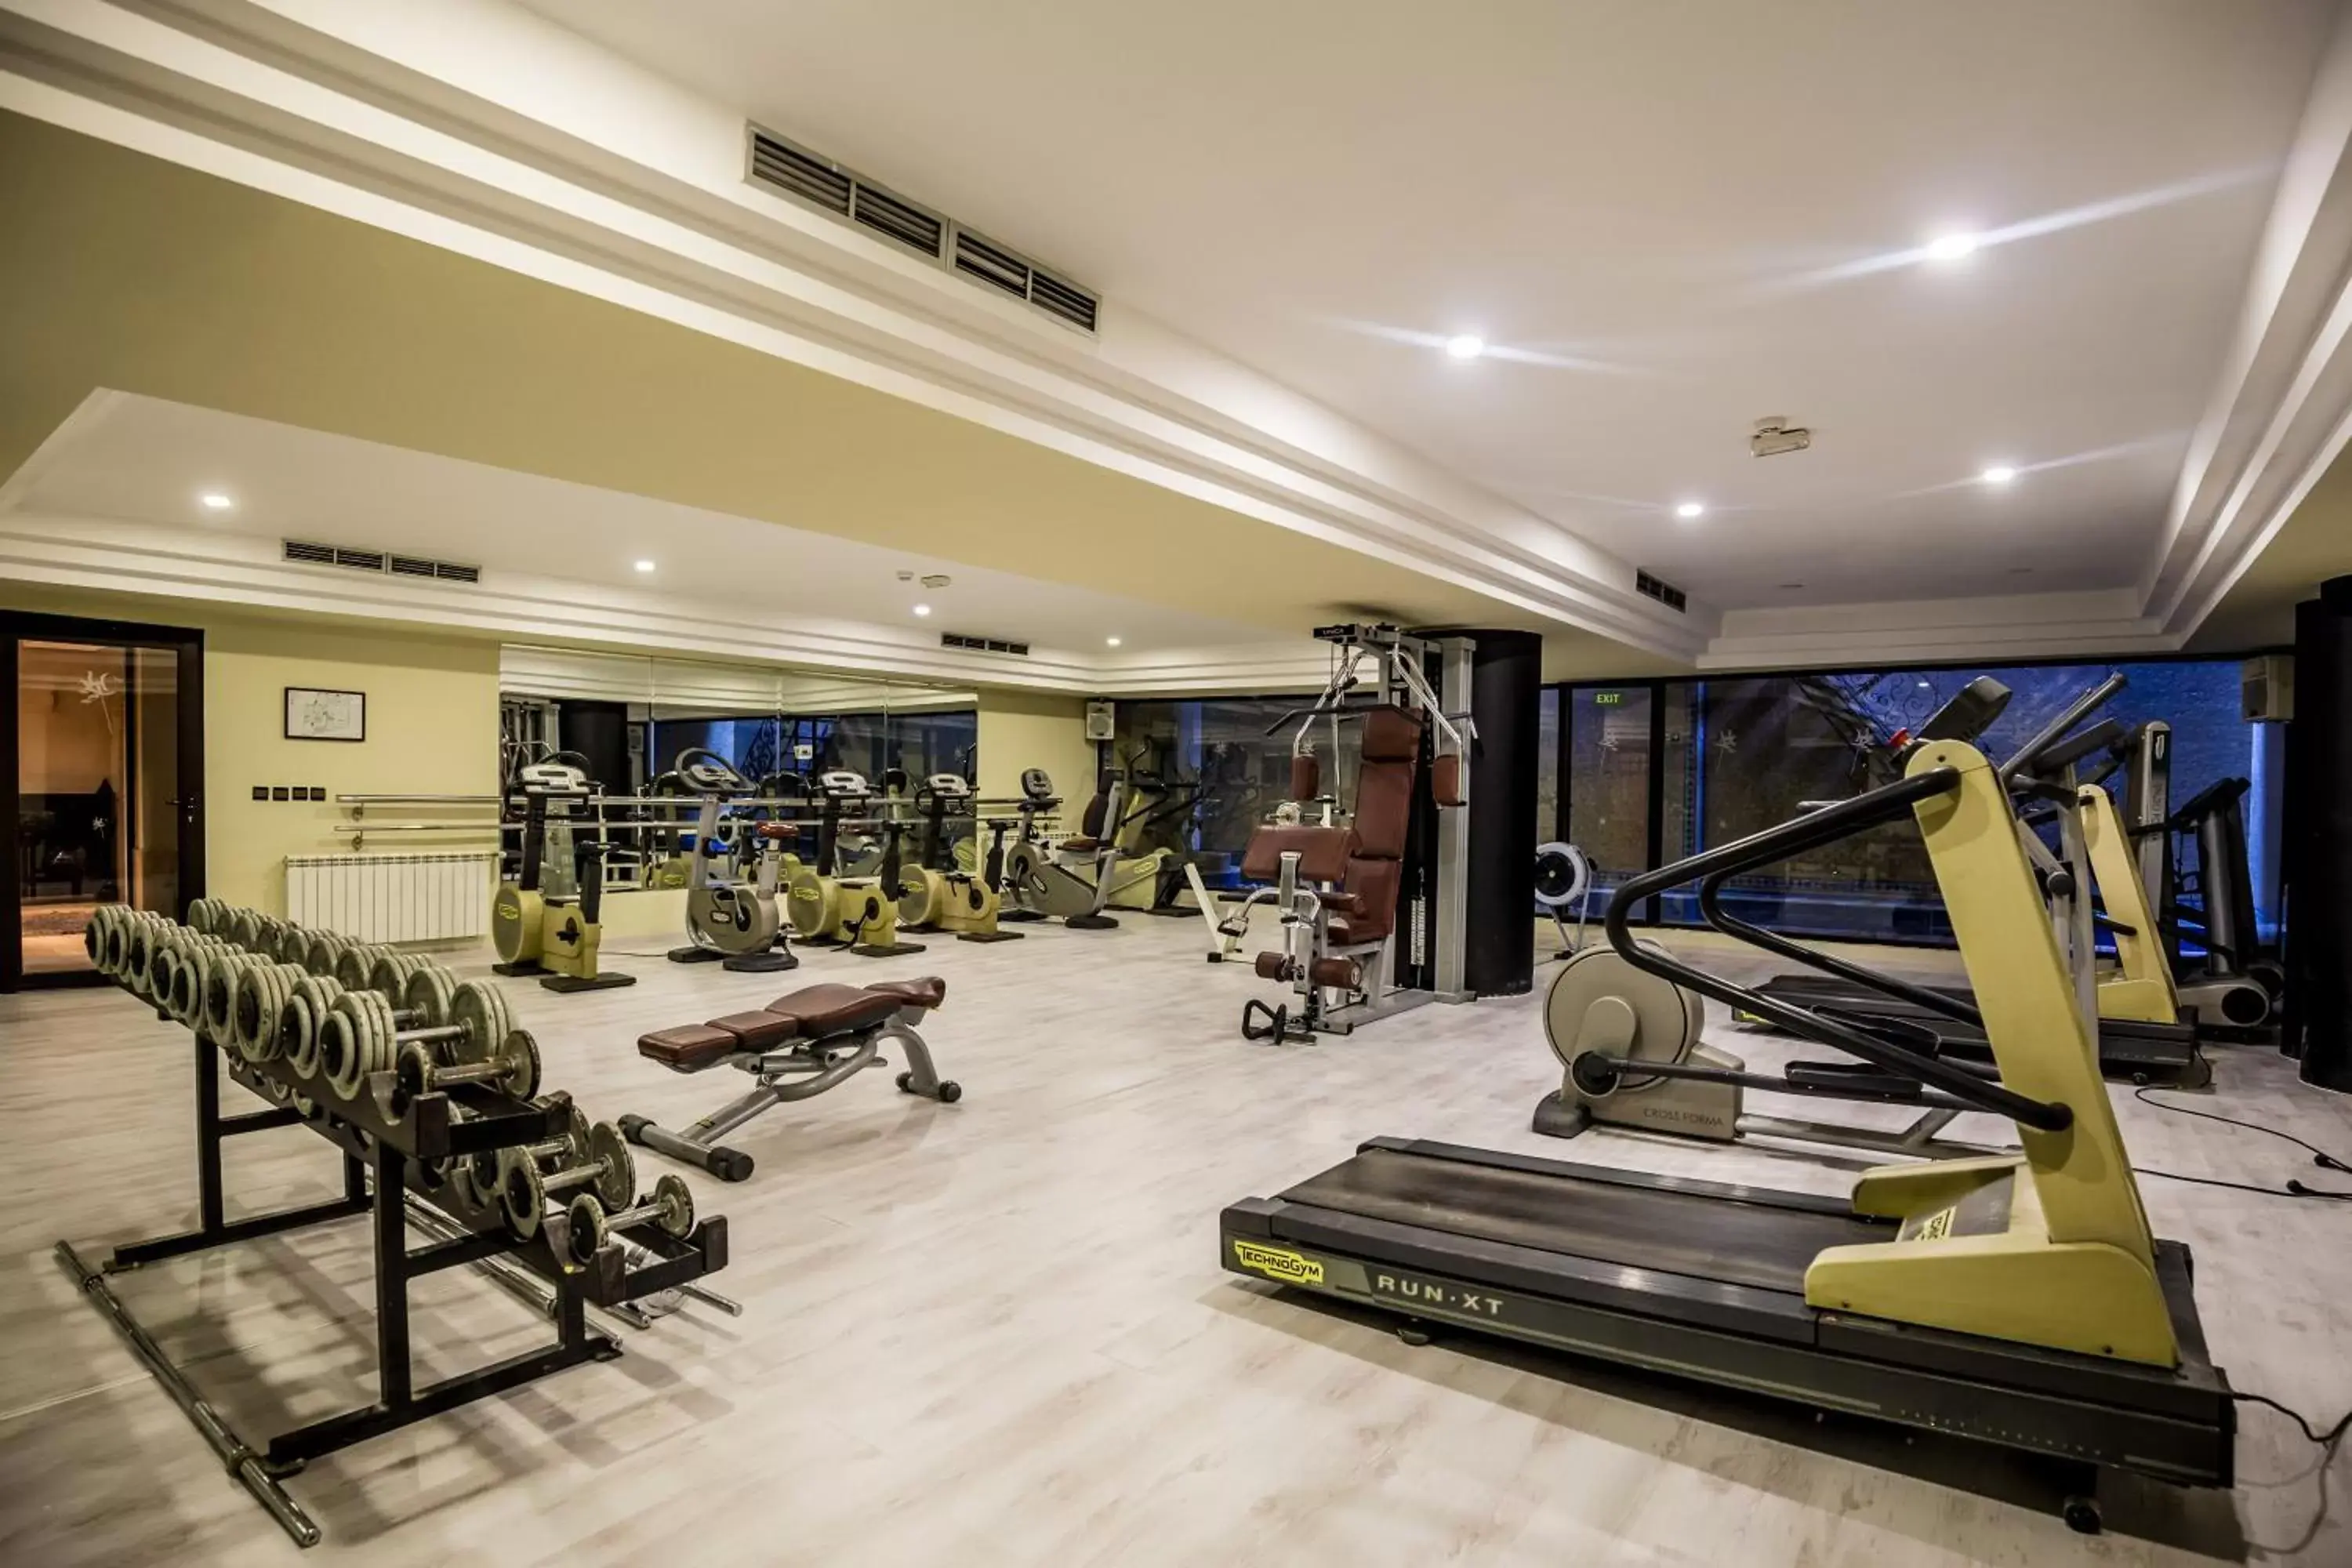 Fitness centre/facilities, Fitness Center/Facilities in Dellarosa Boutique Hotel and Spa